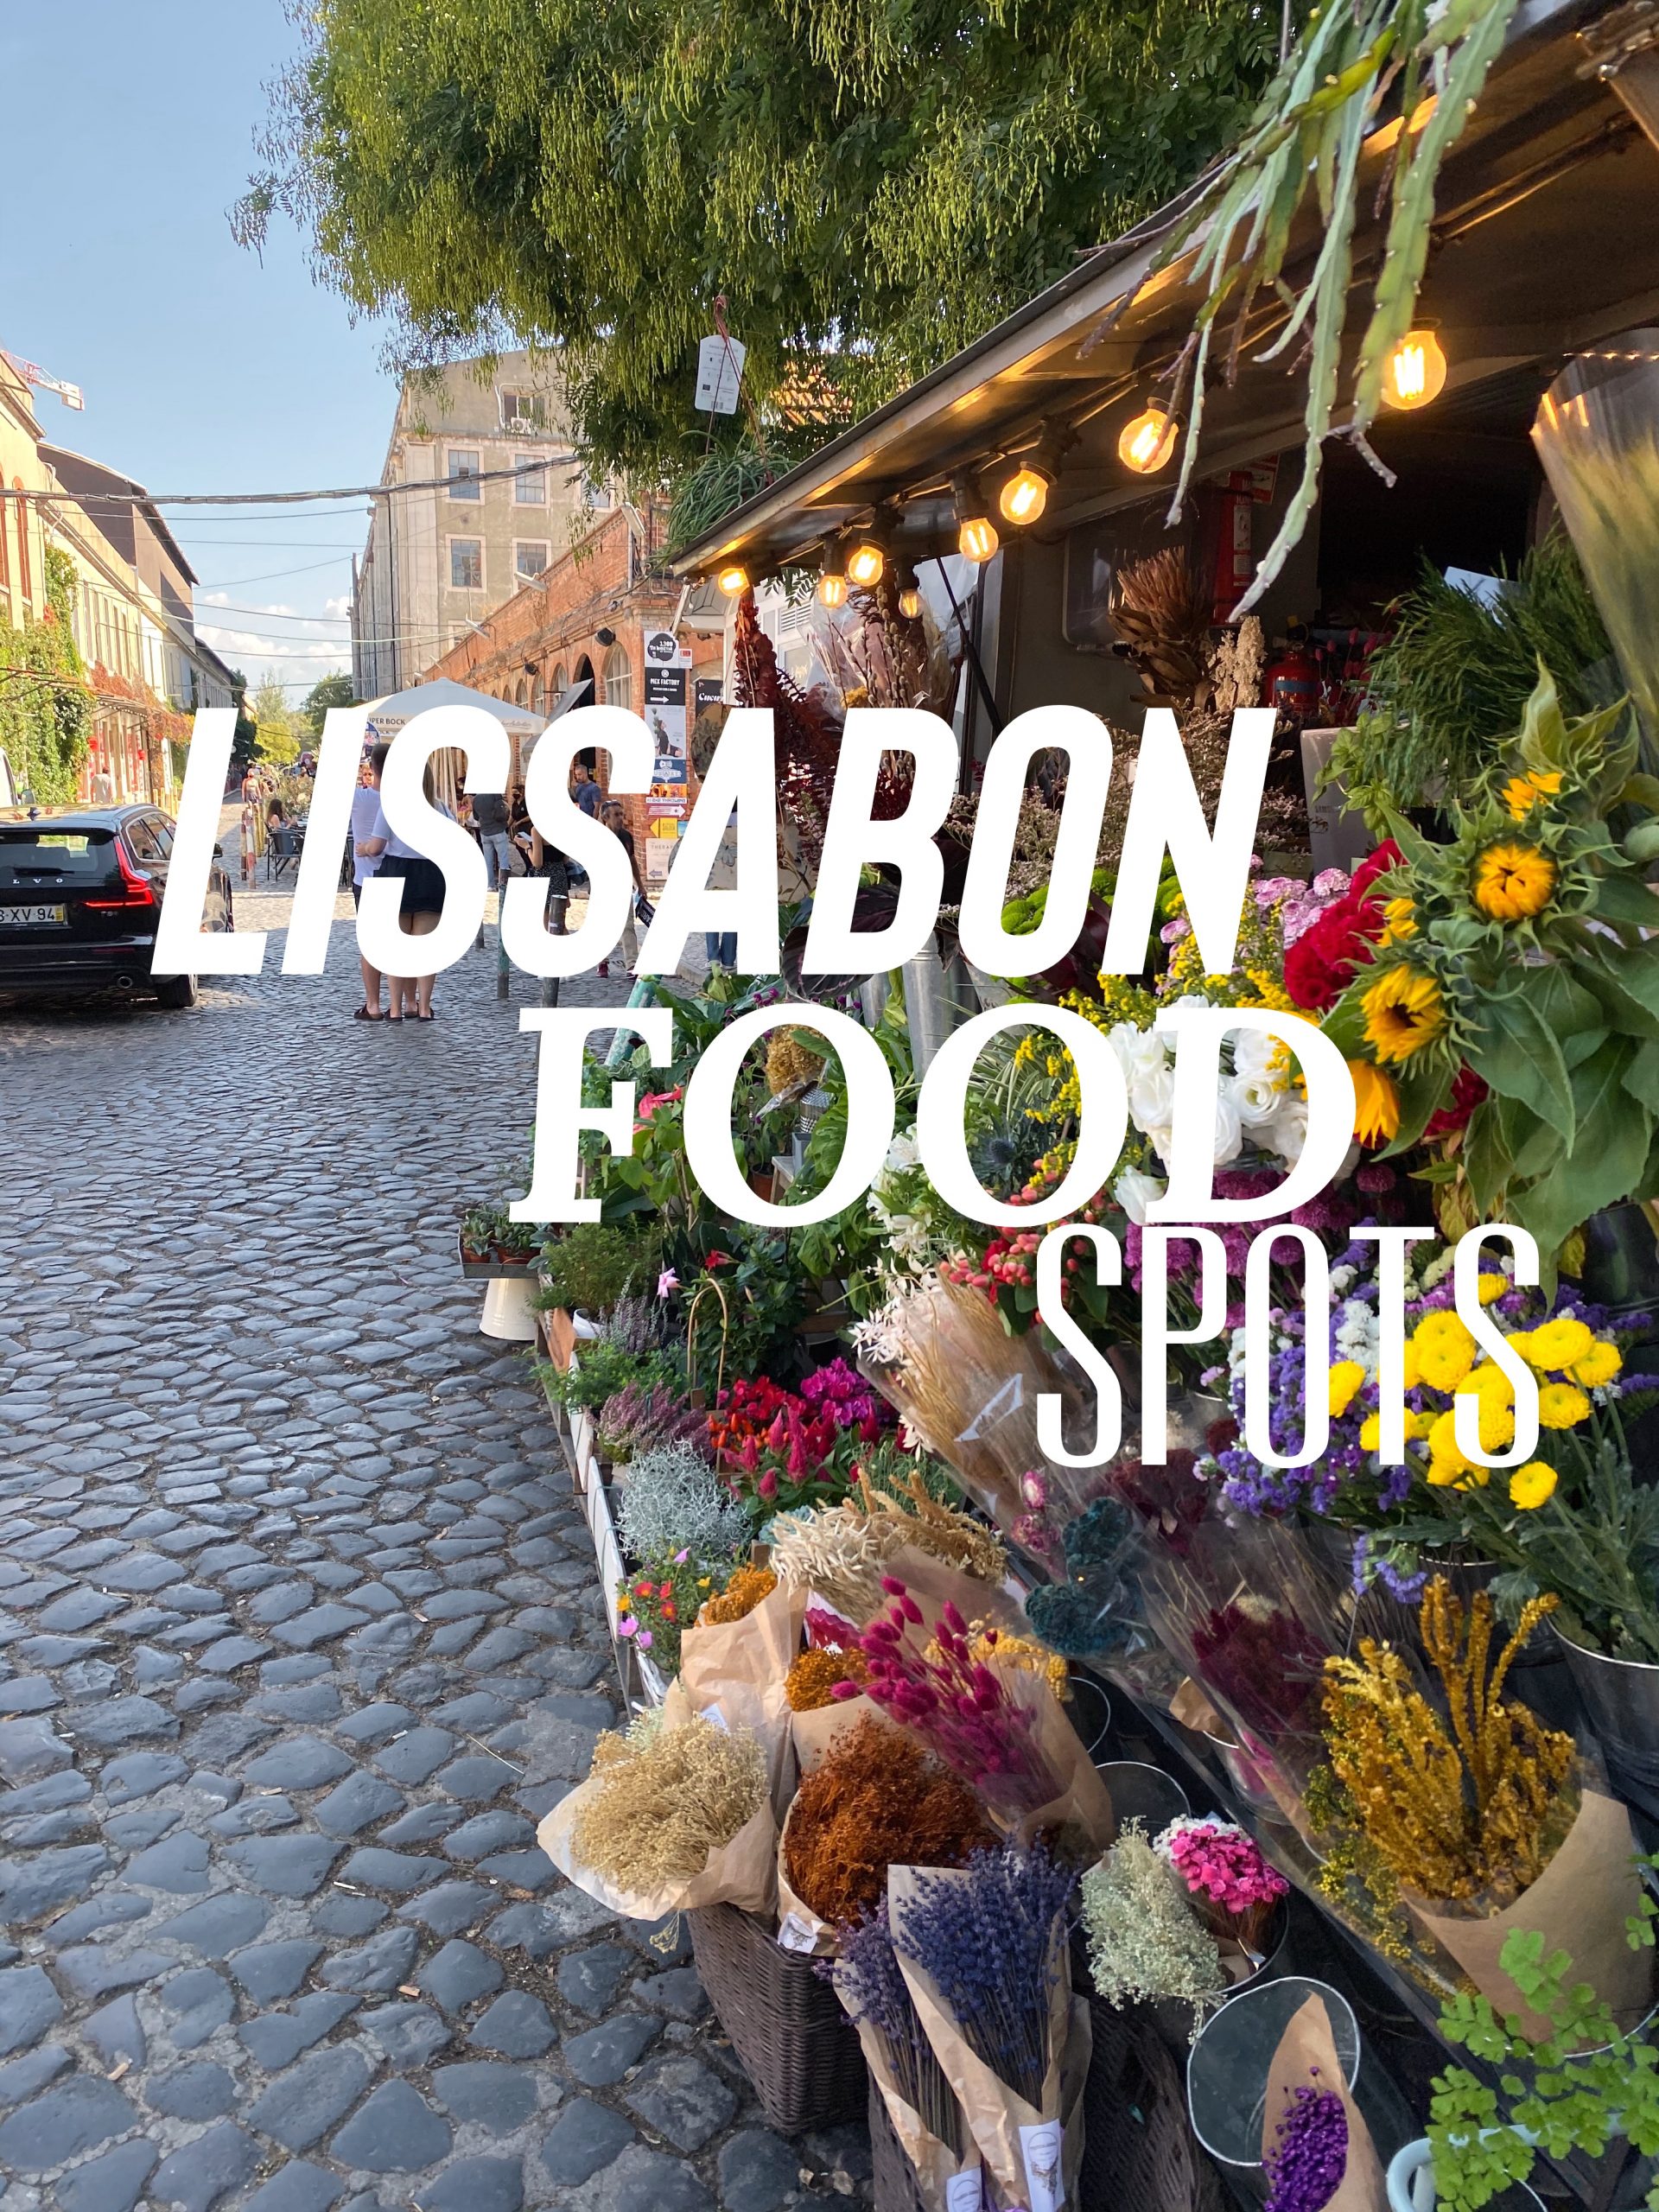 Lissabon Food & Bar Tipps